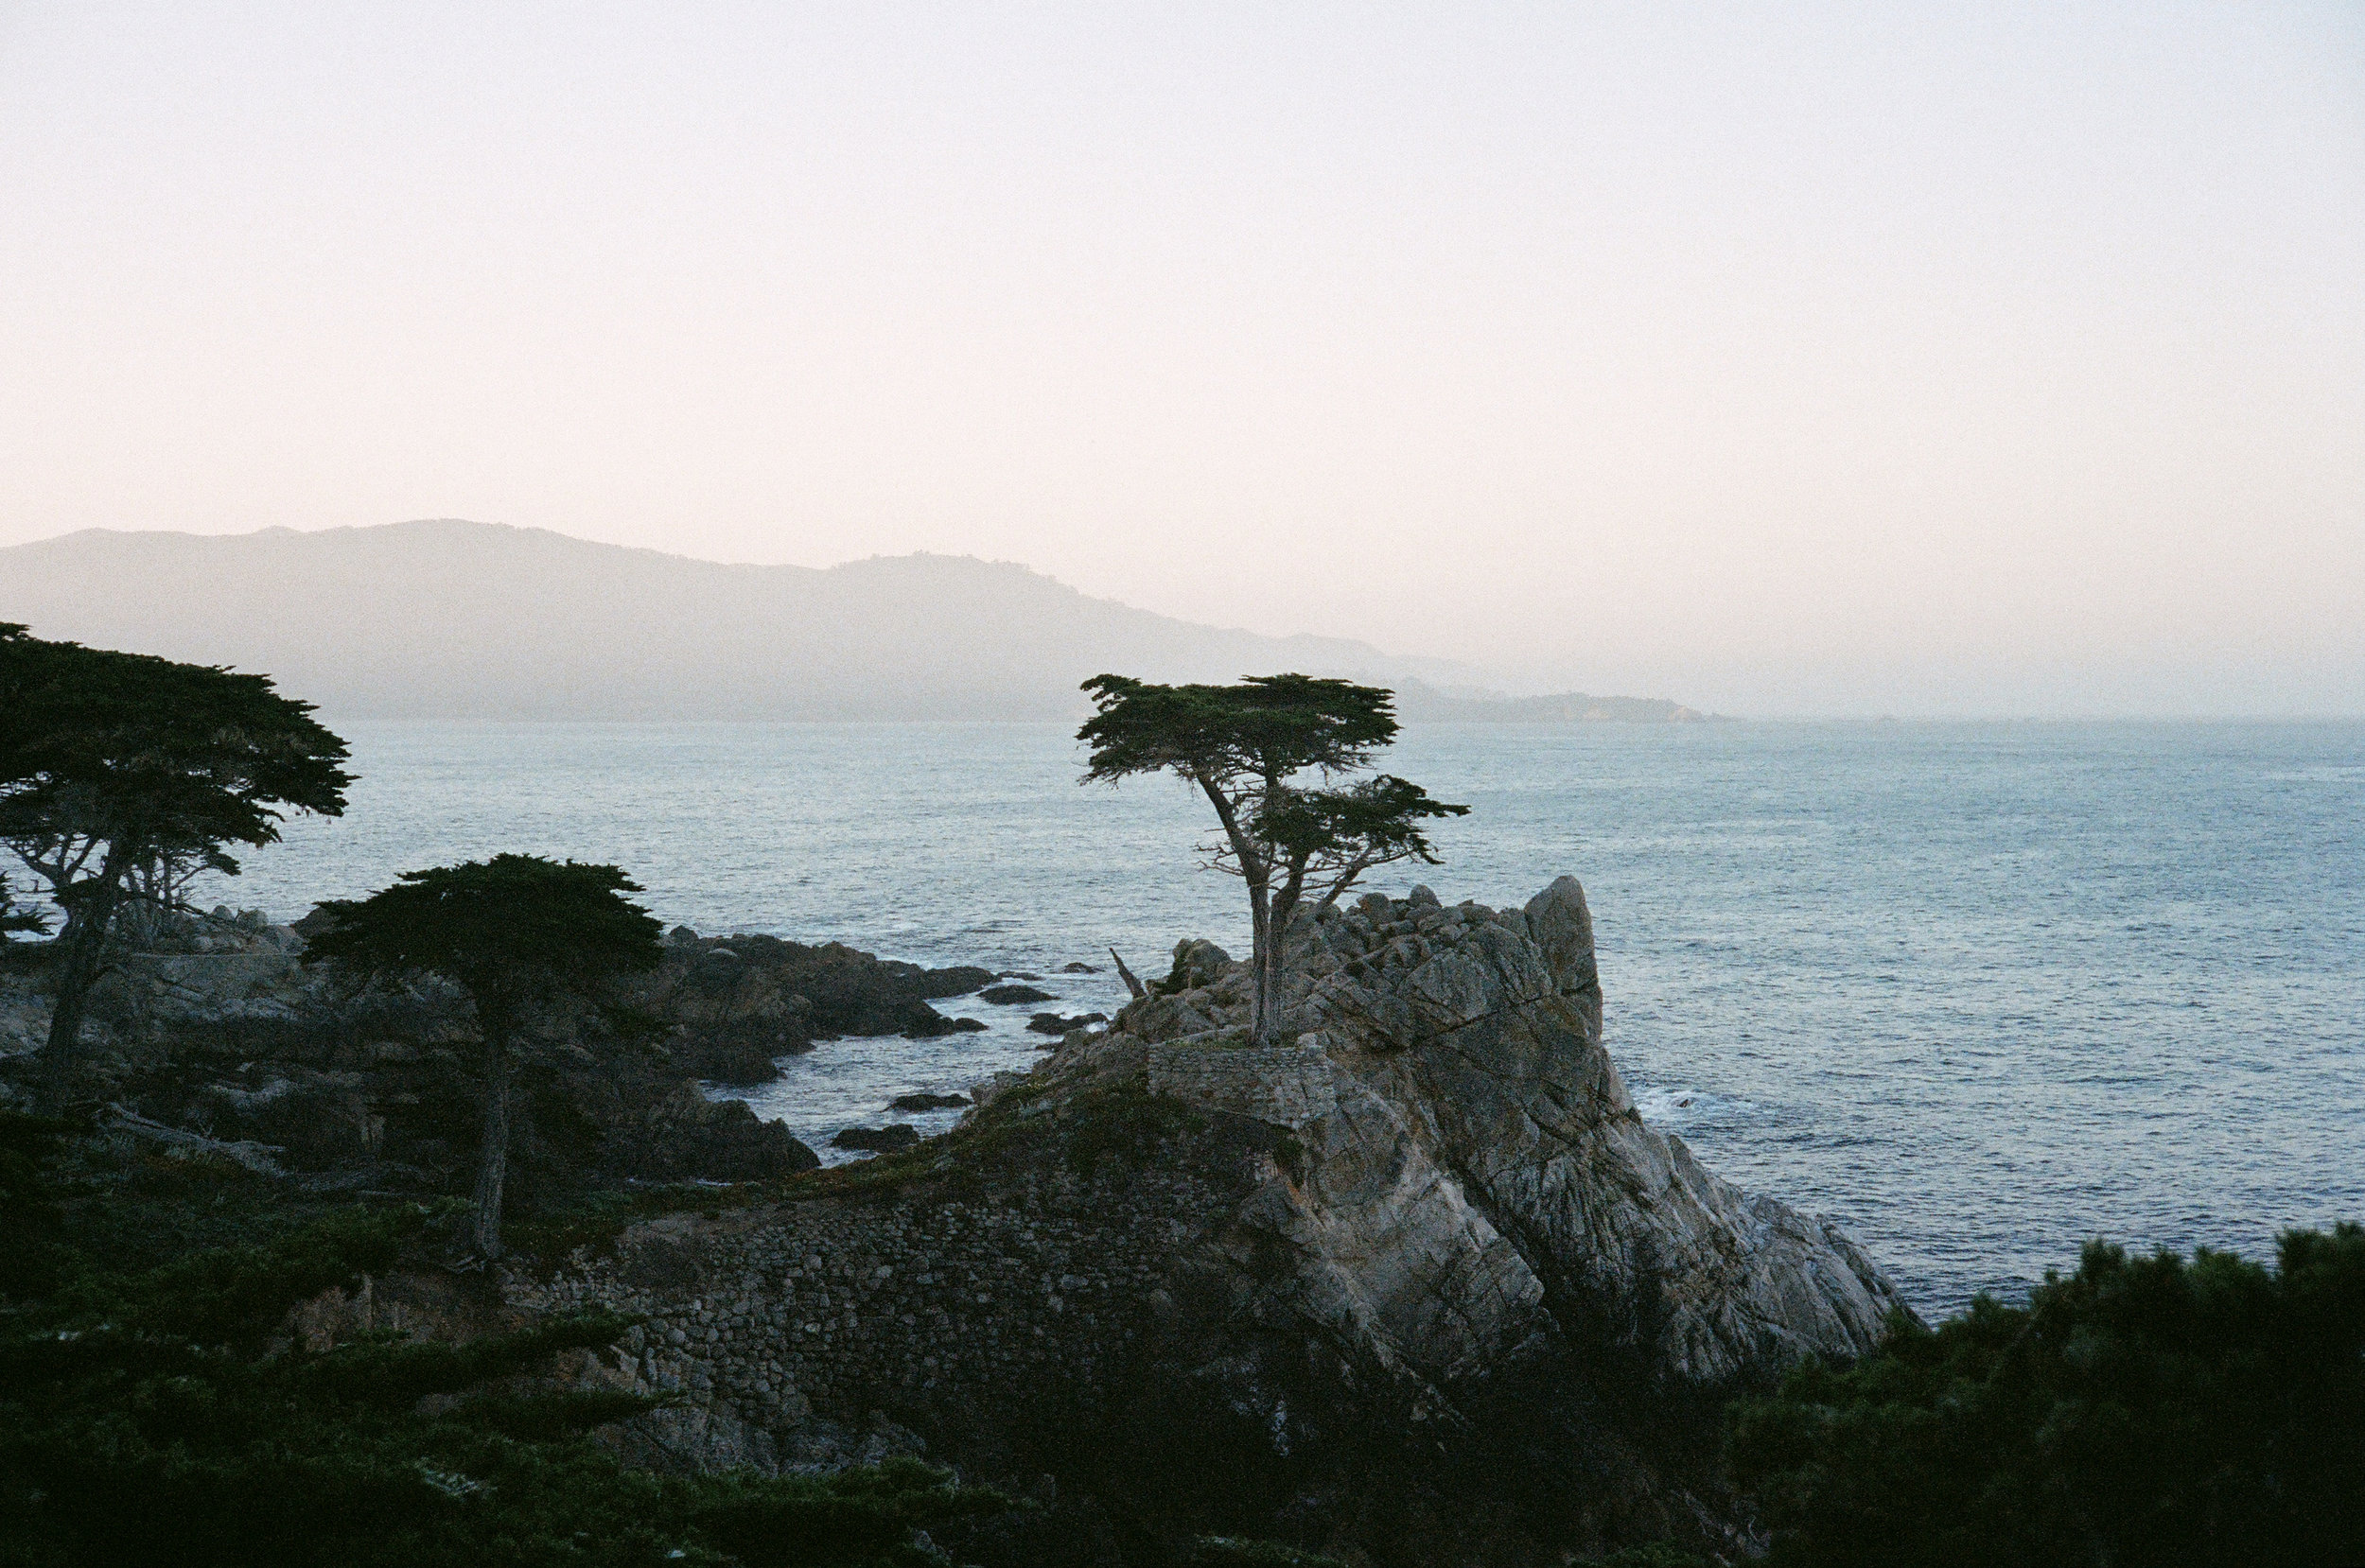  Del Monte Forest, California : Kodak Portra 400 